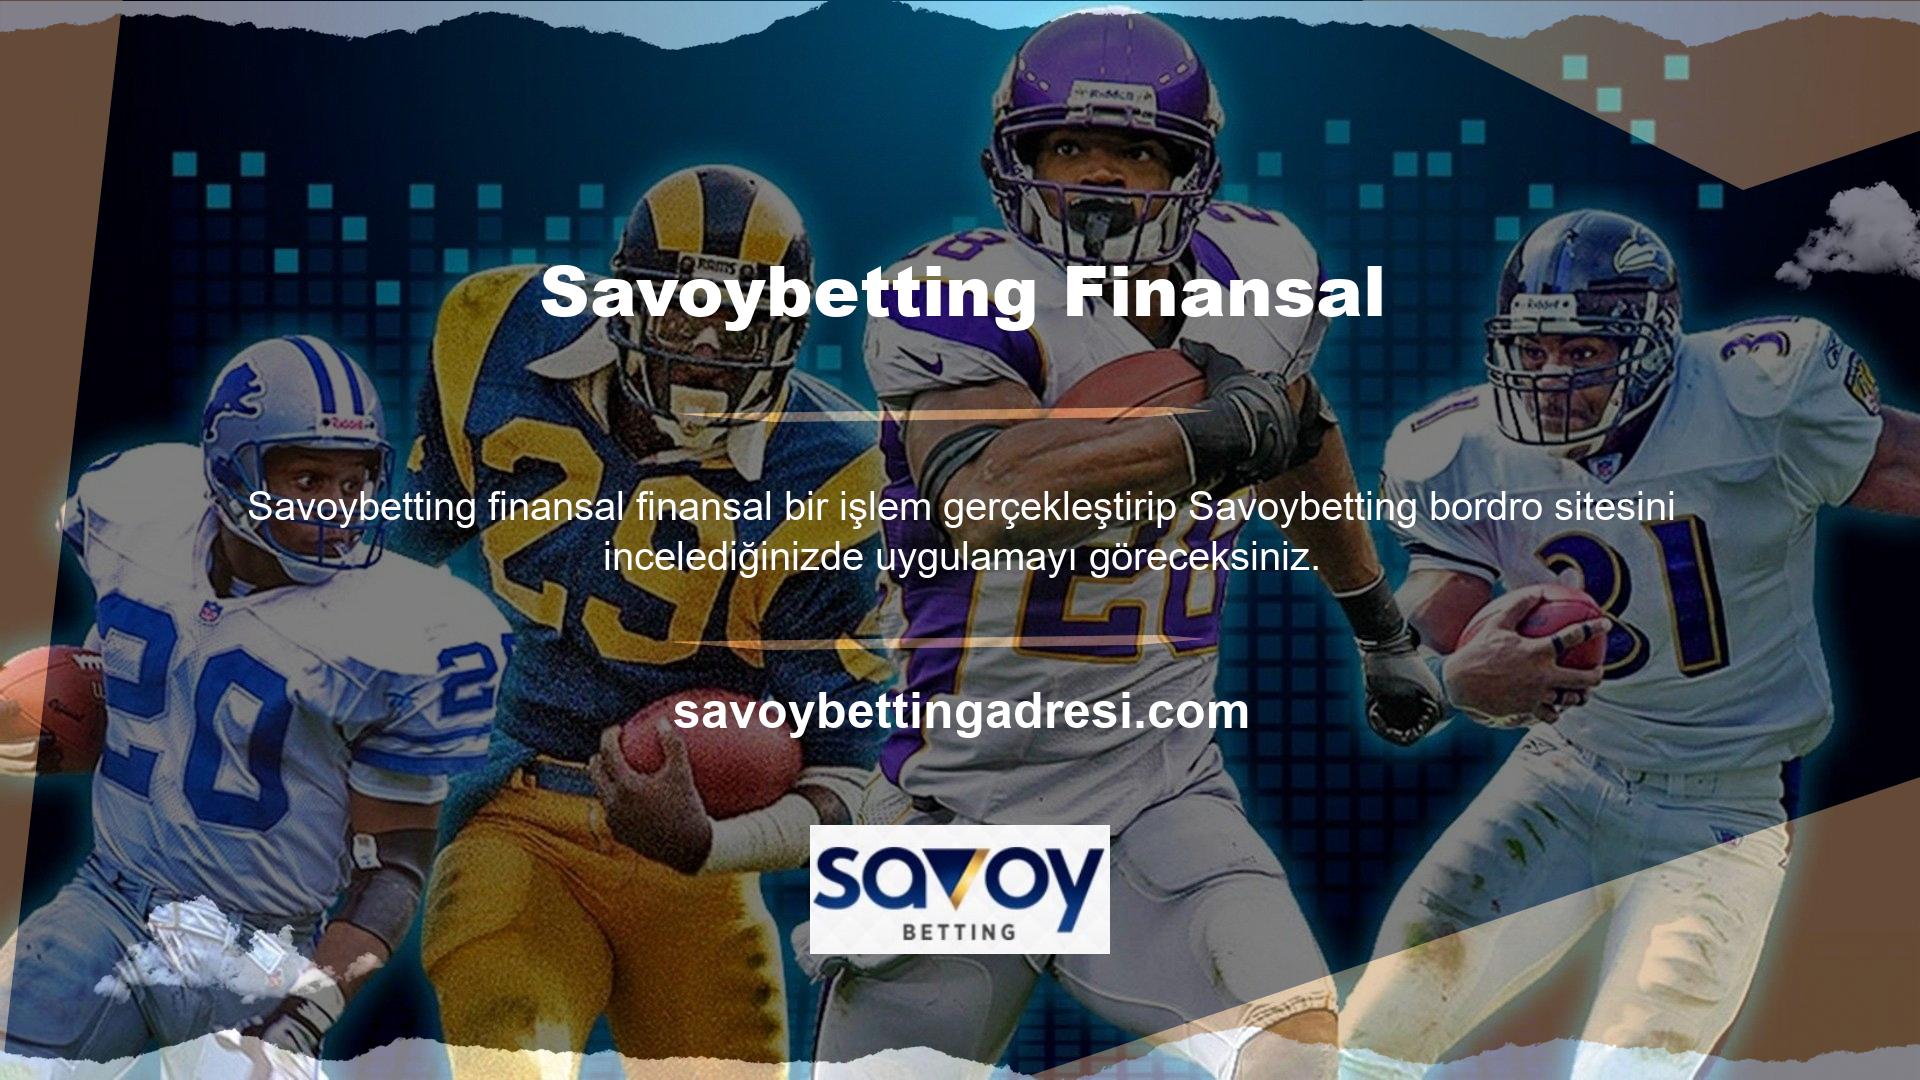 Ödemeler Savoybetting sanal cüzdanlarına ve kişisel hesaplarına sorunsuz bir şekilde yapılır